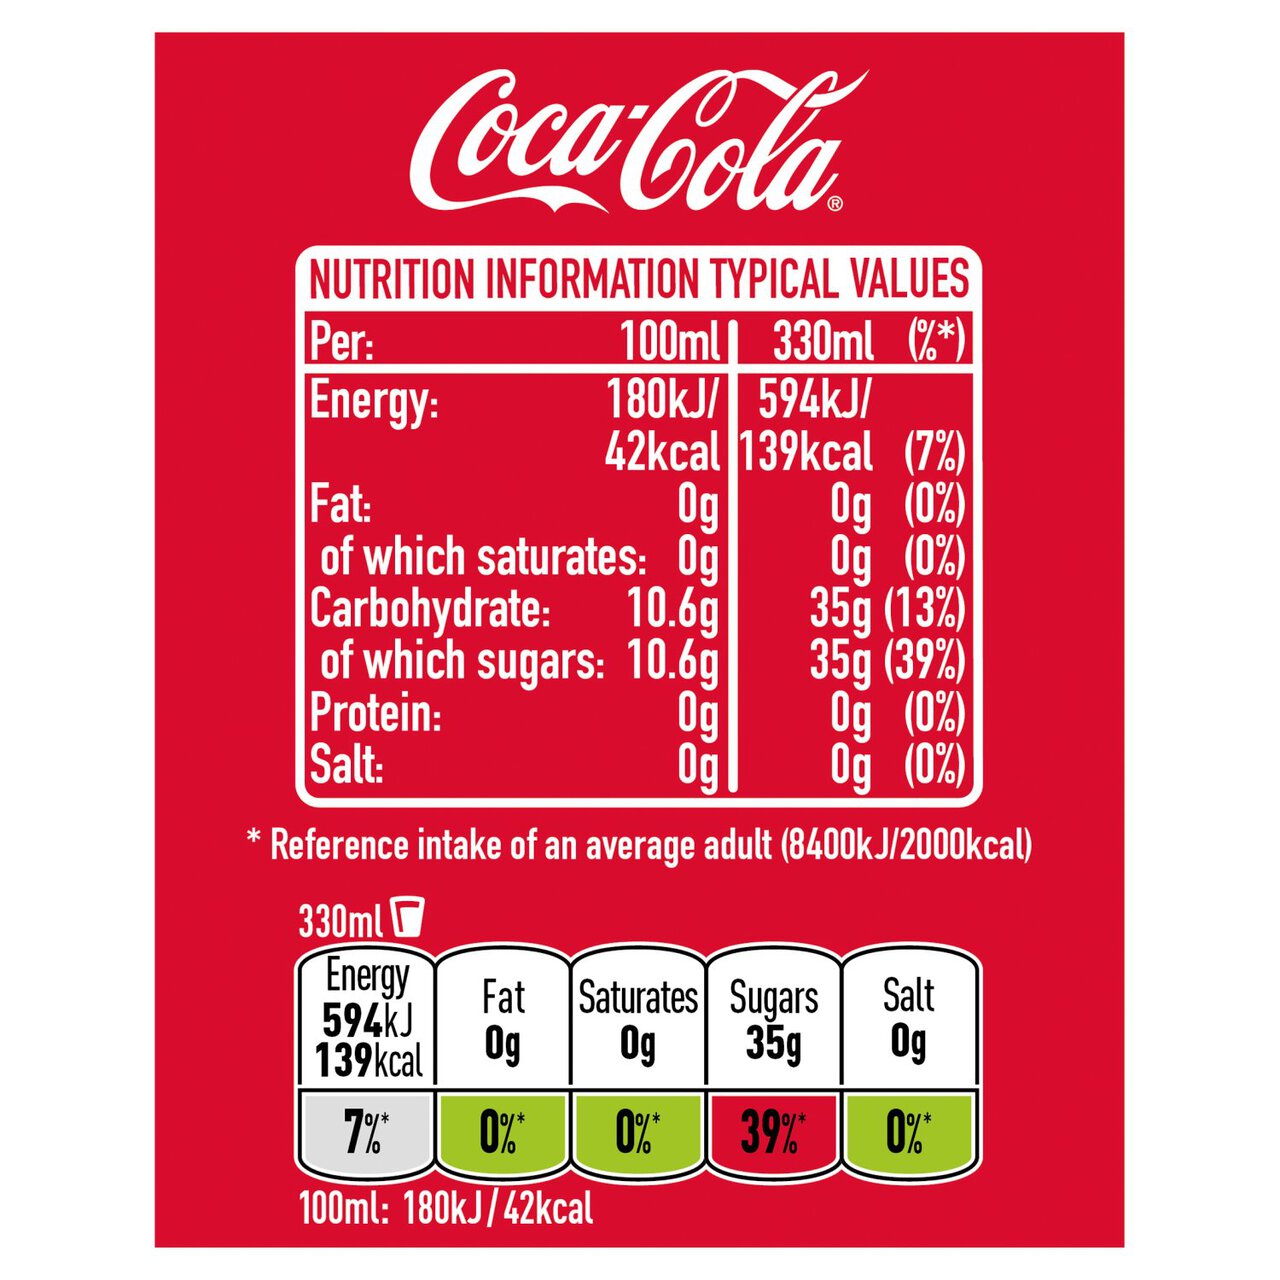 Coca-Cola Original Taste 4 x 330ml